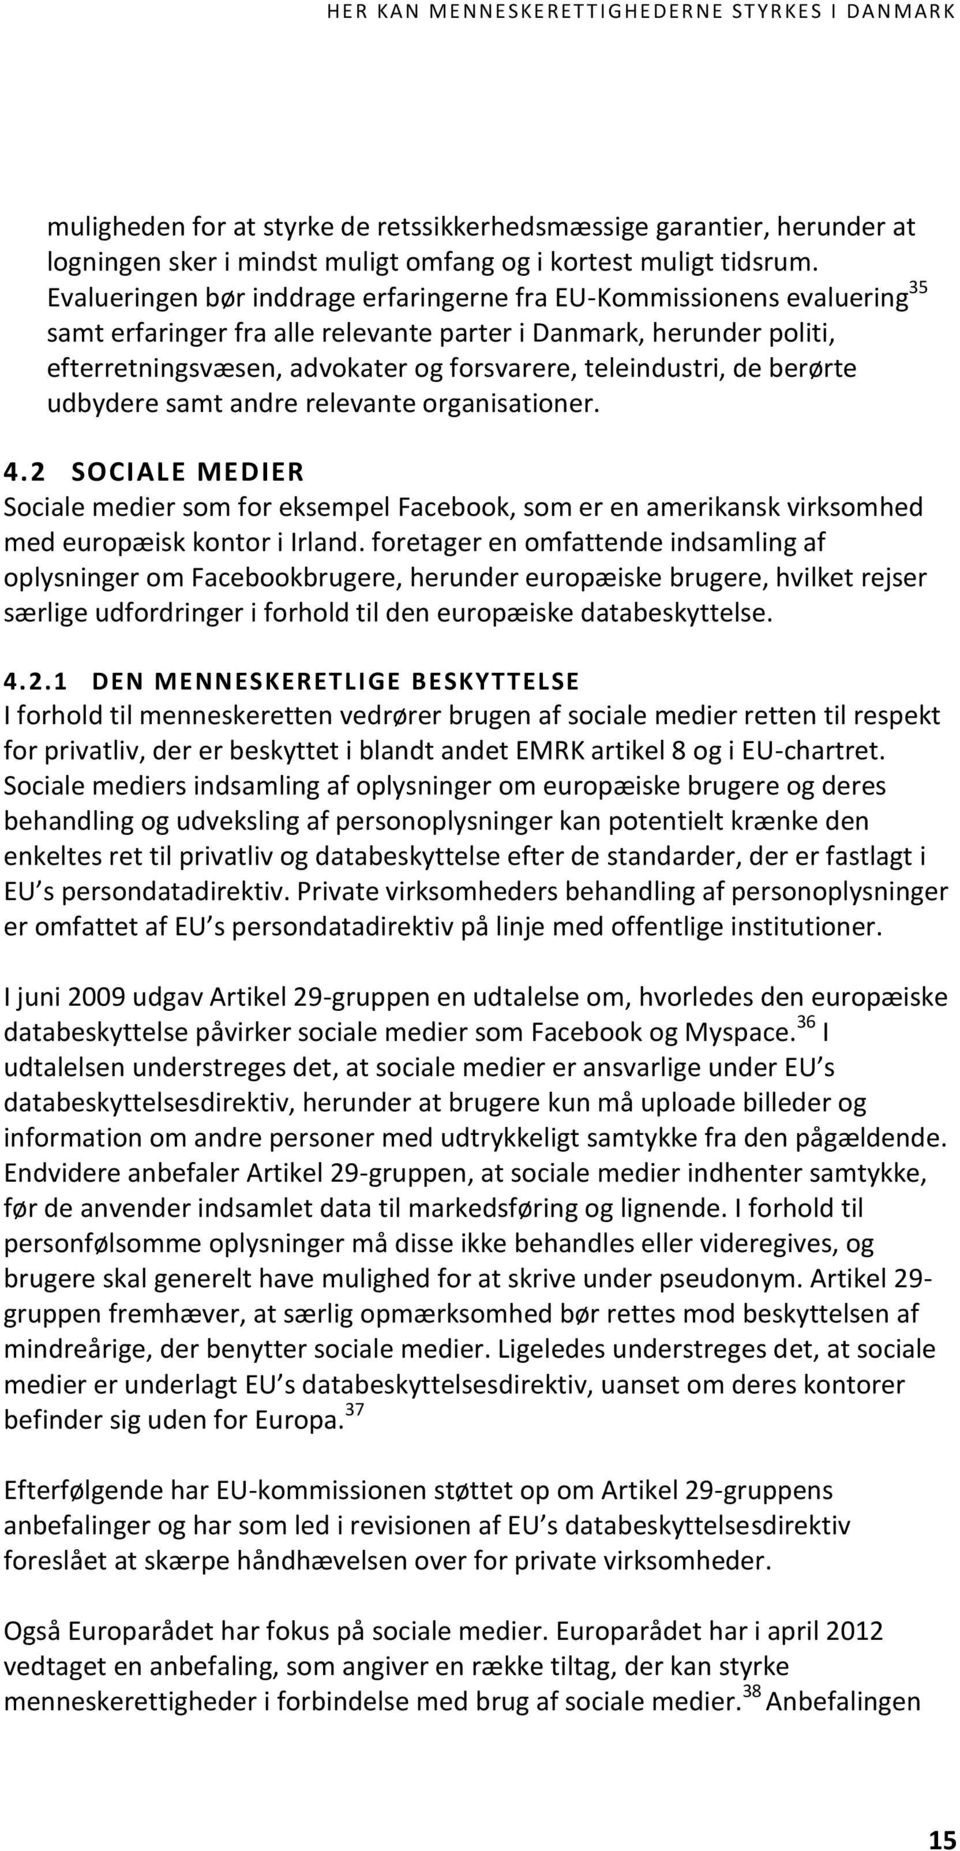 teleindustri, de berørte udbydere samt andre relevante organisationer. 4.2 SOCIALE MEDIER Sociale medier som for eksempel Facebook, som er en amerikansk virksomhed med europæisk kontor i Irland.